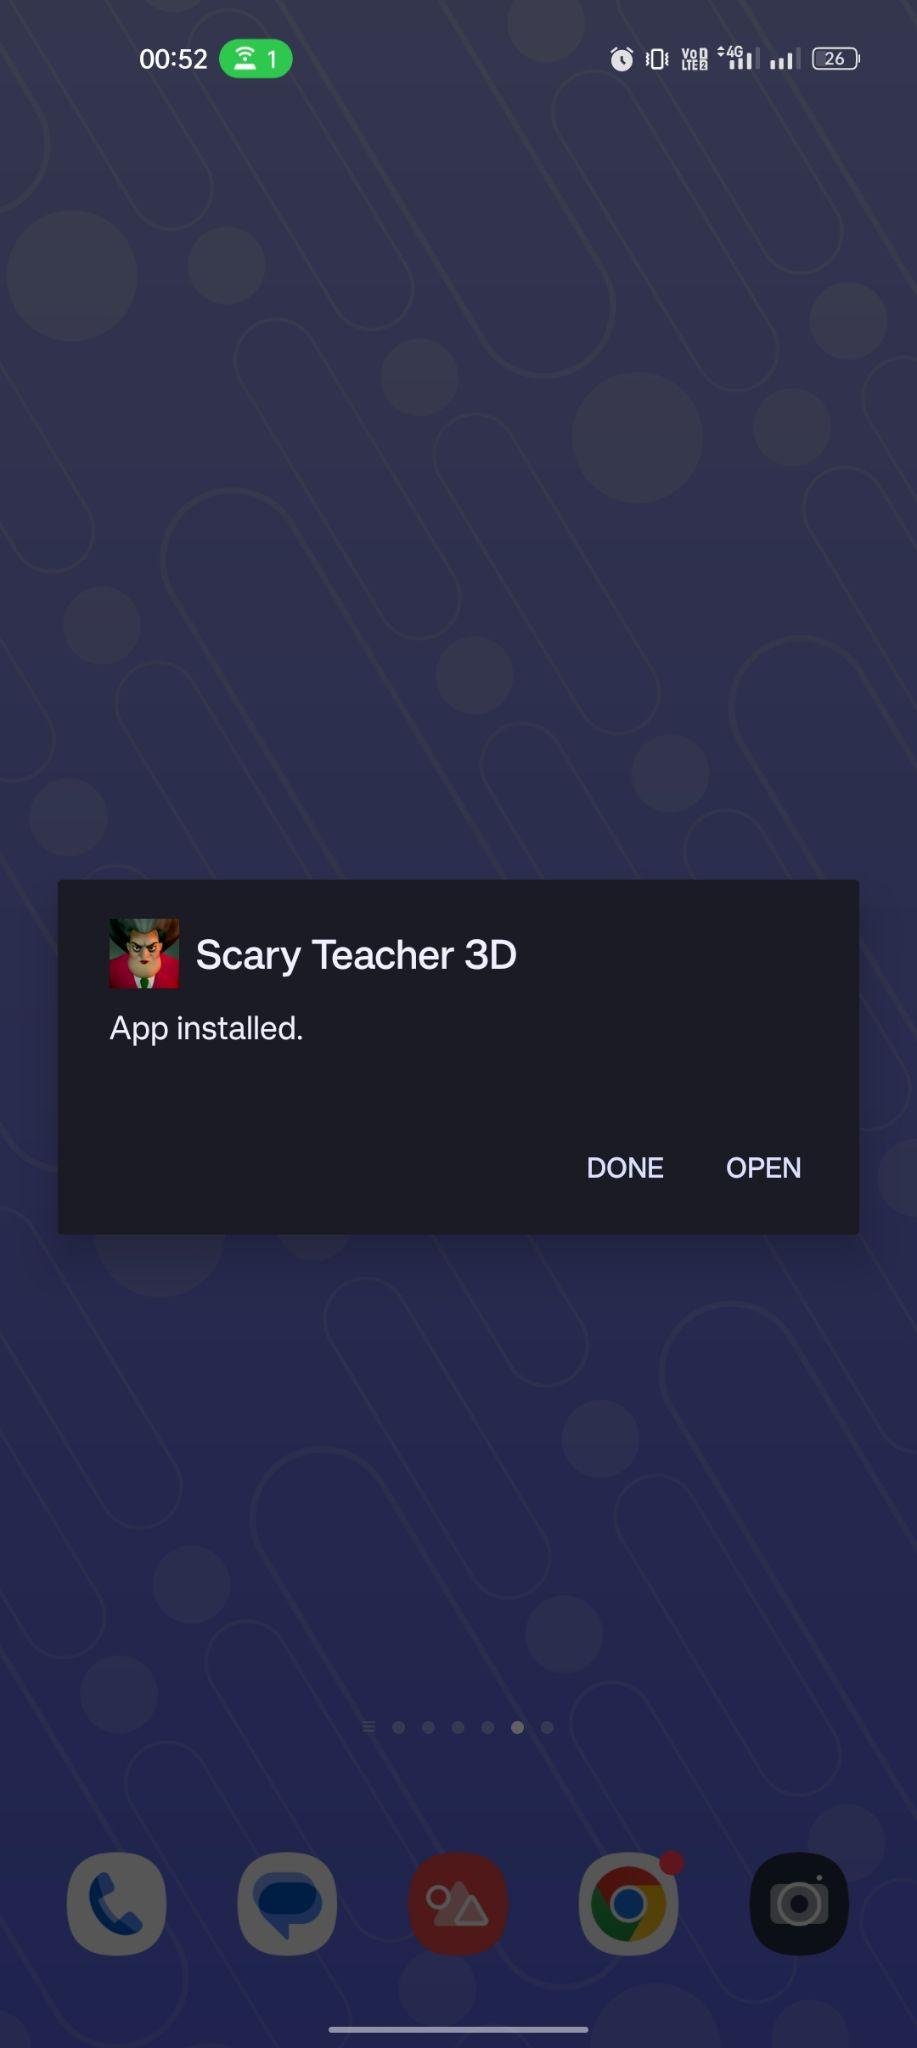 Scary Teacher 3D apk installed